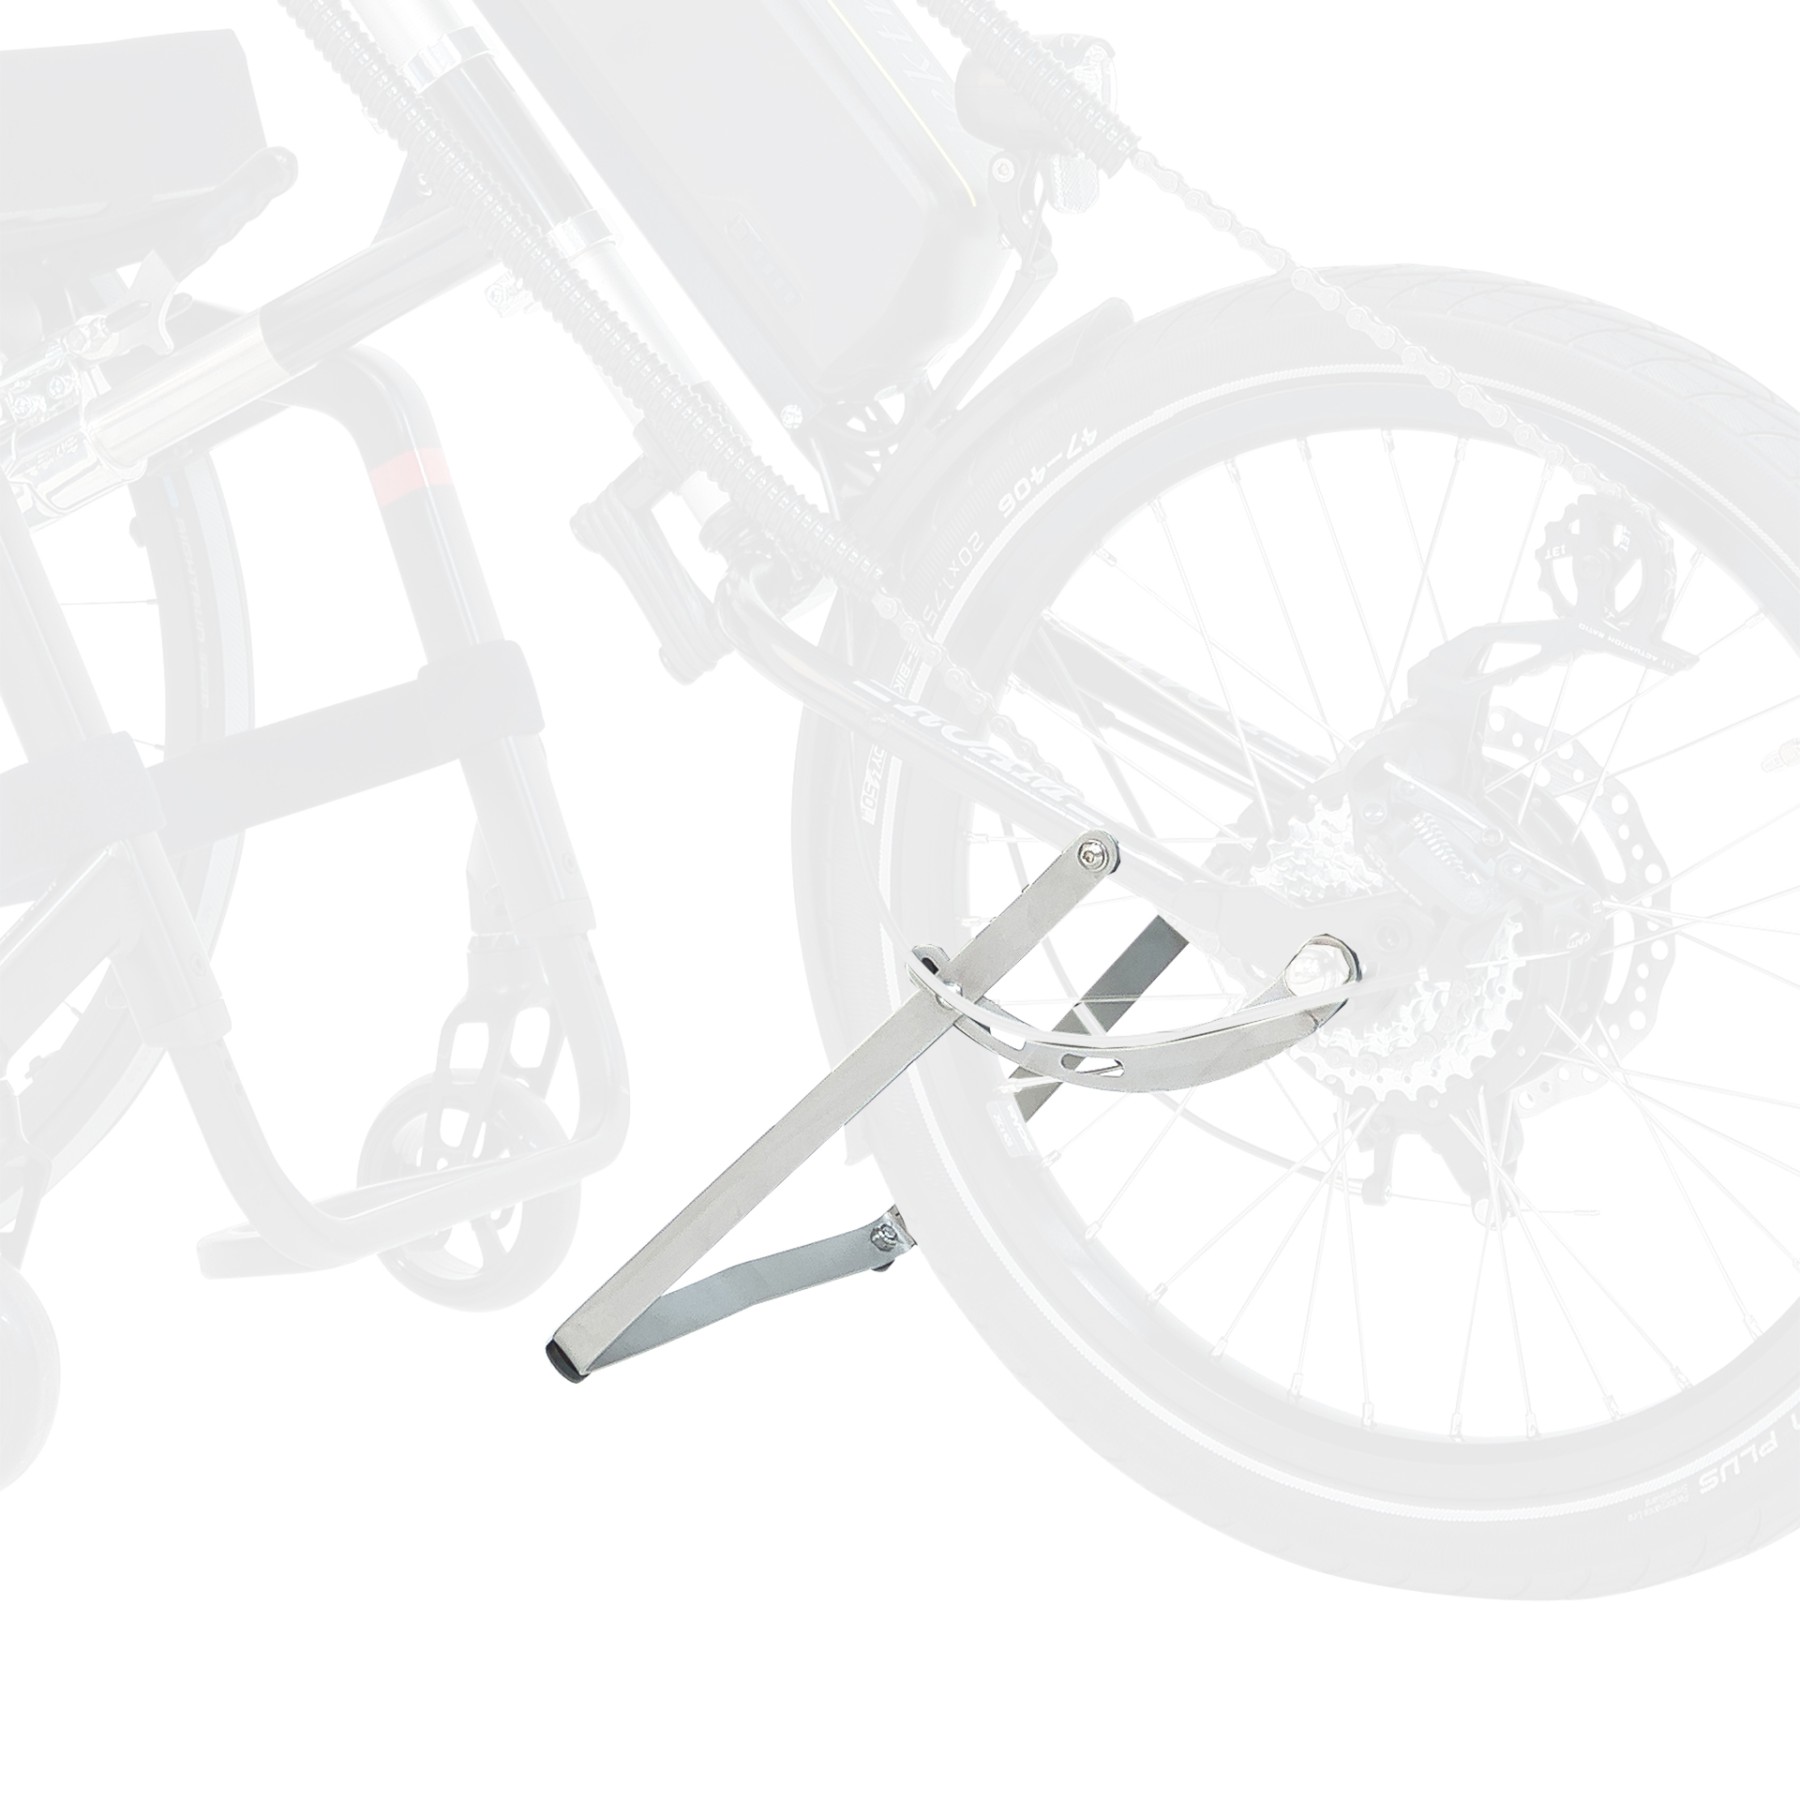 bikestandaard na afkoppeling van ebike mini 12